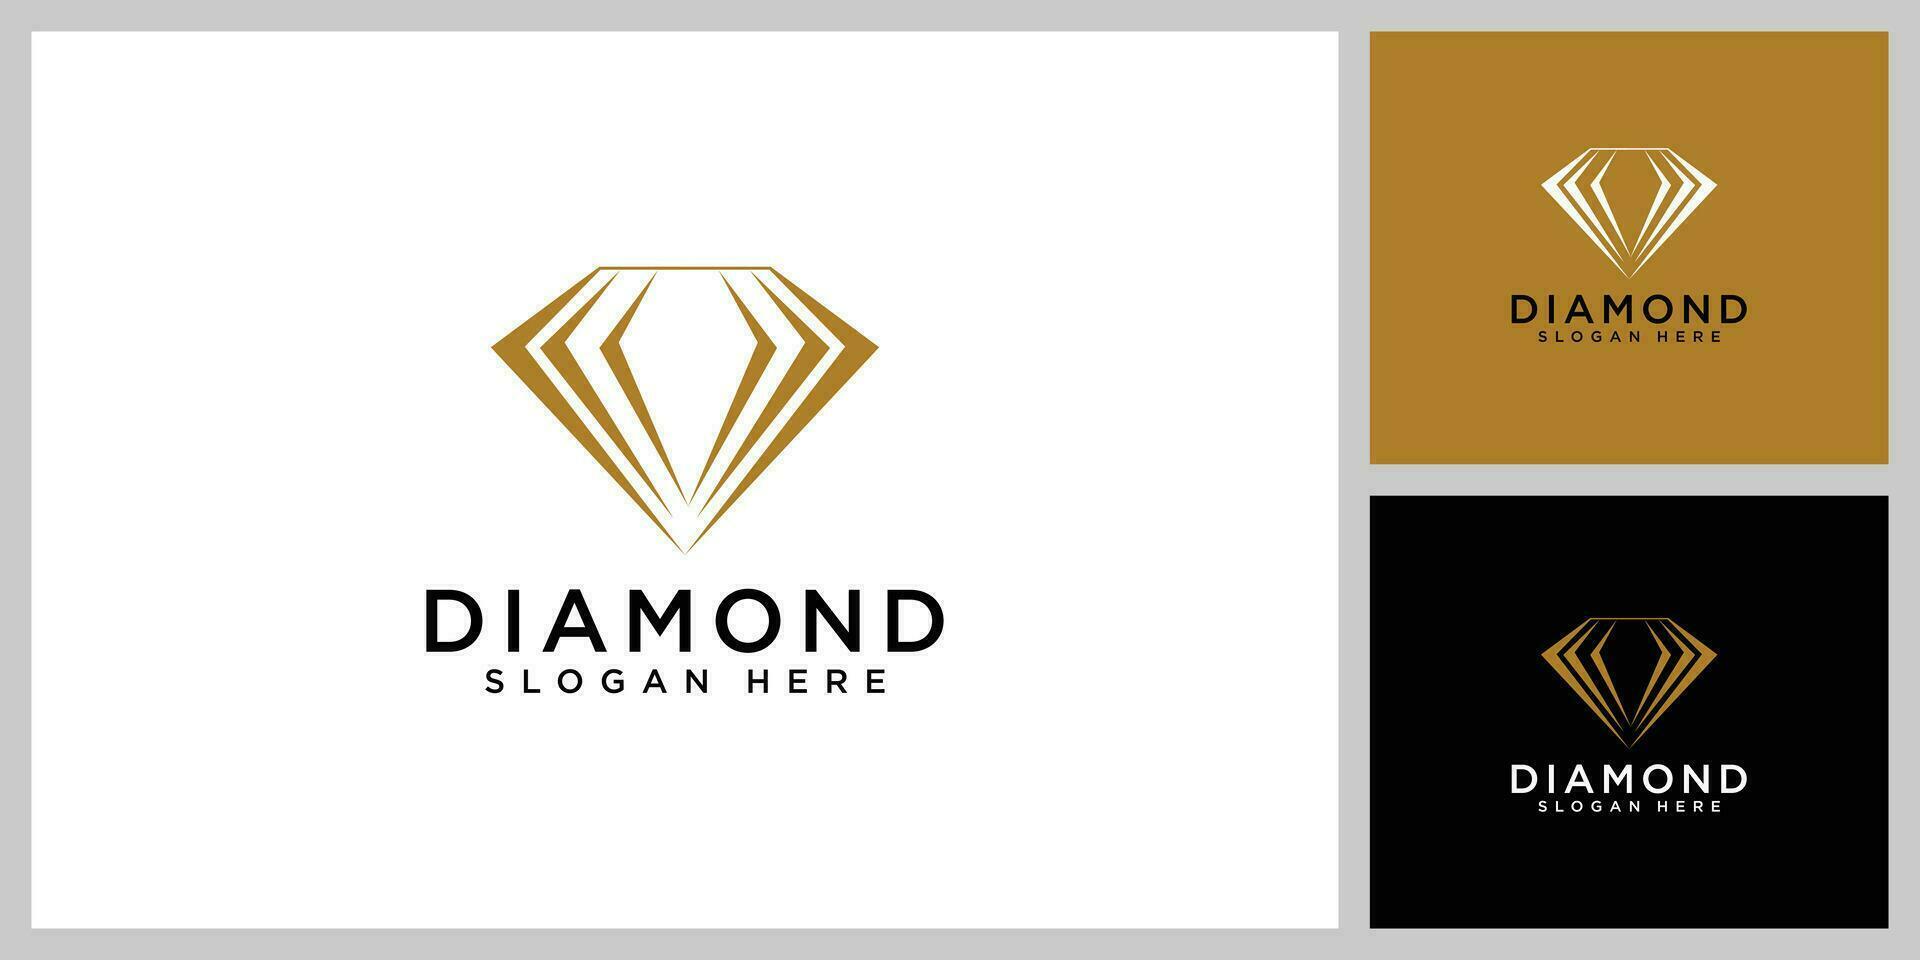 diamante logo disegni vettoriali linea mono